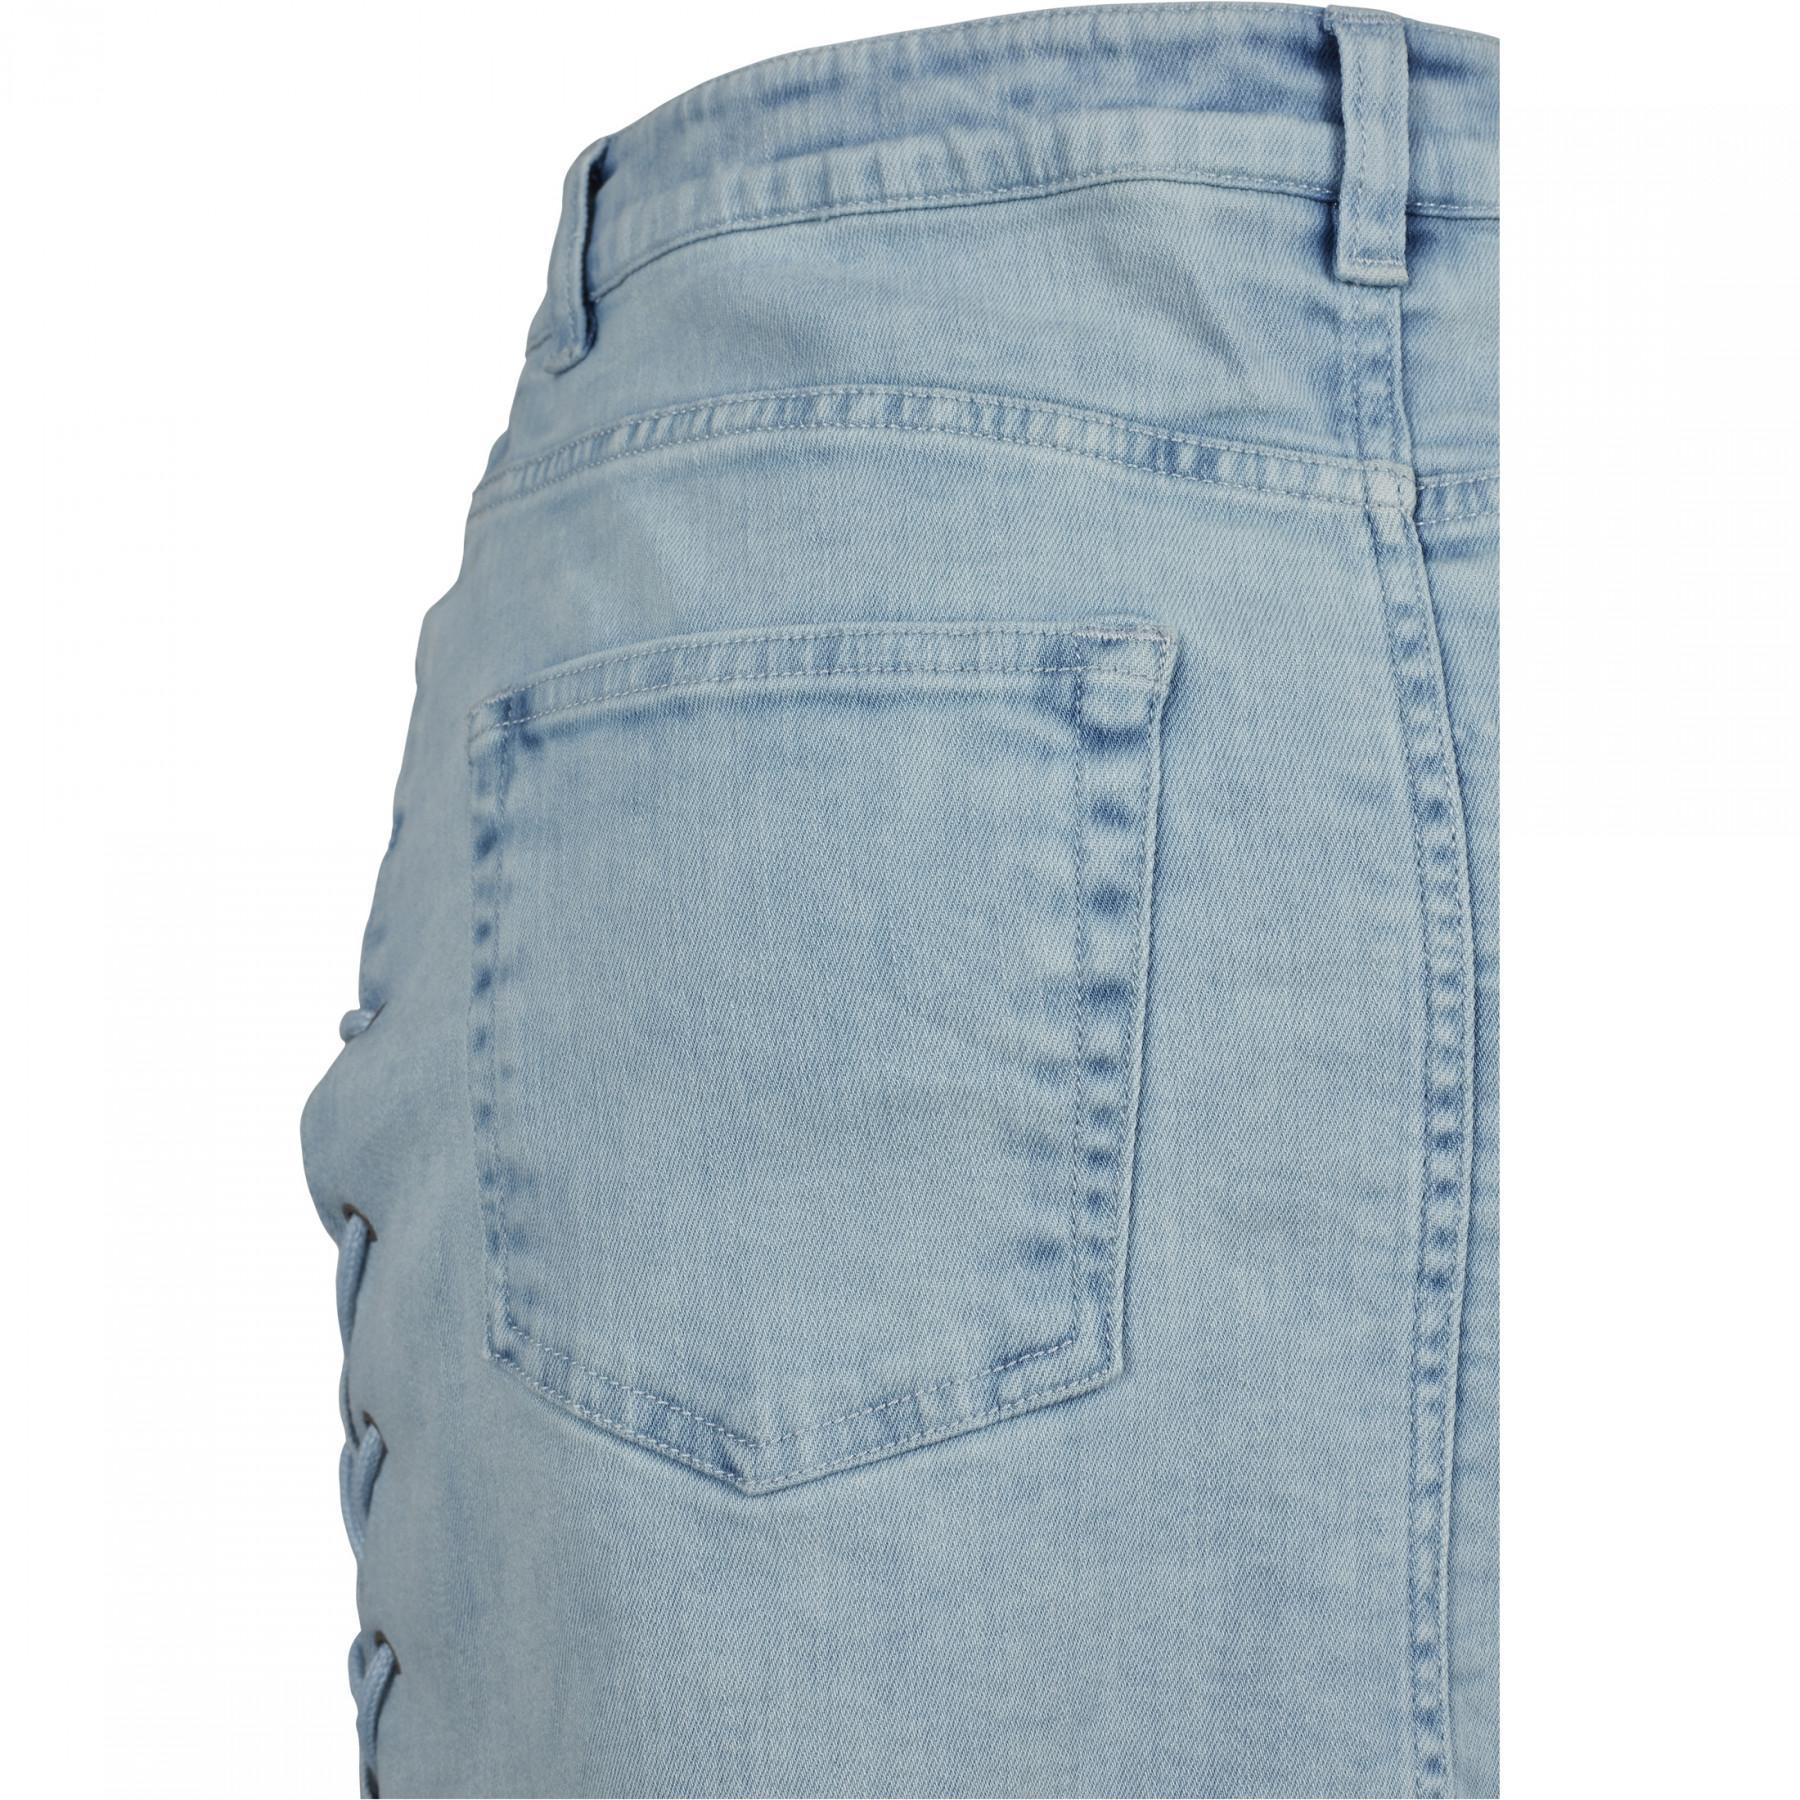 Spódnica damska miejska klasyczna jeansowa sznurowana